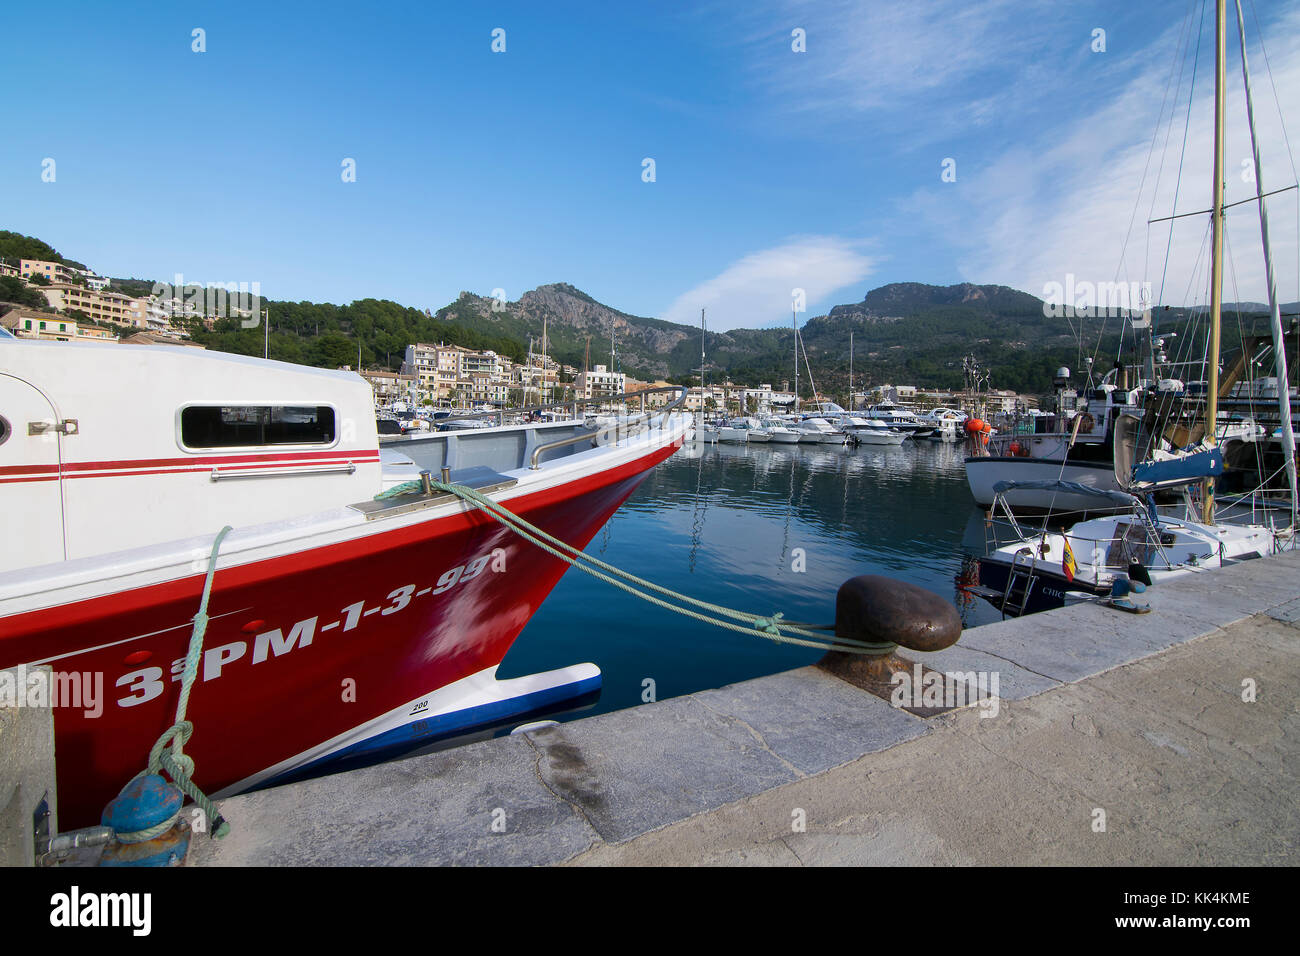 Le port de plaisance, port de soller, Majorque, Espagne Banque D'Images